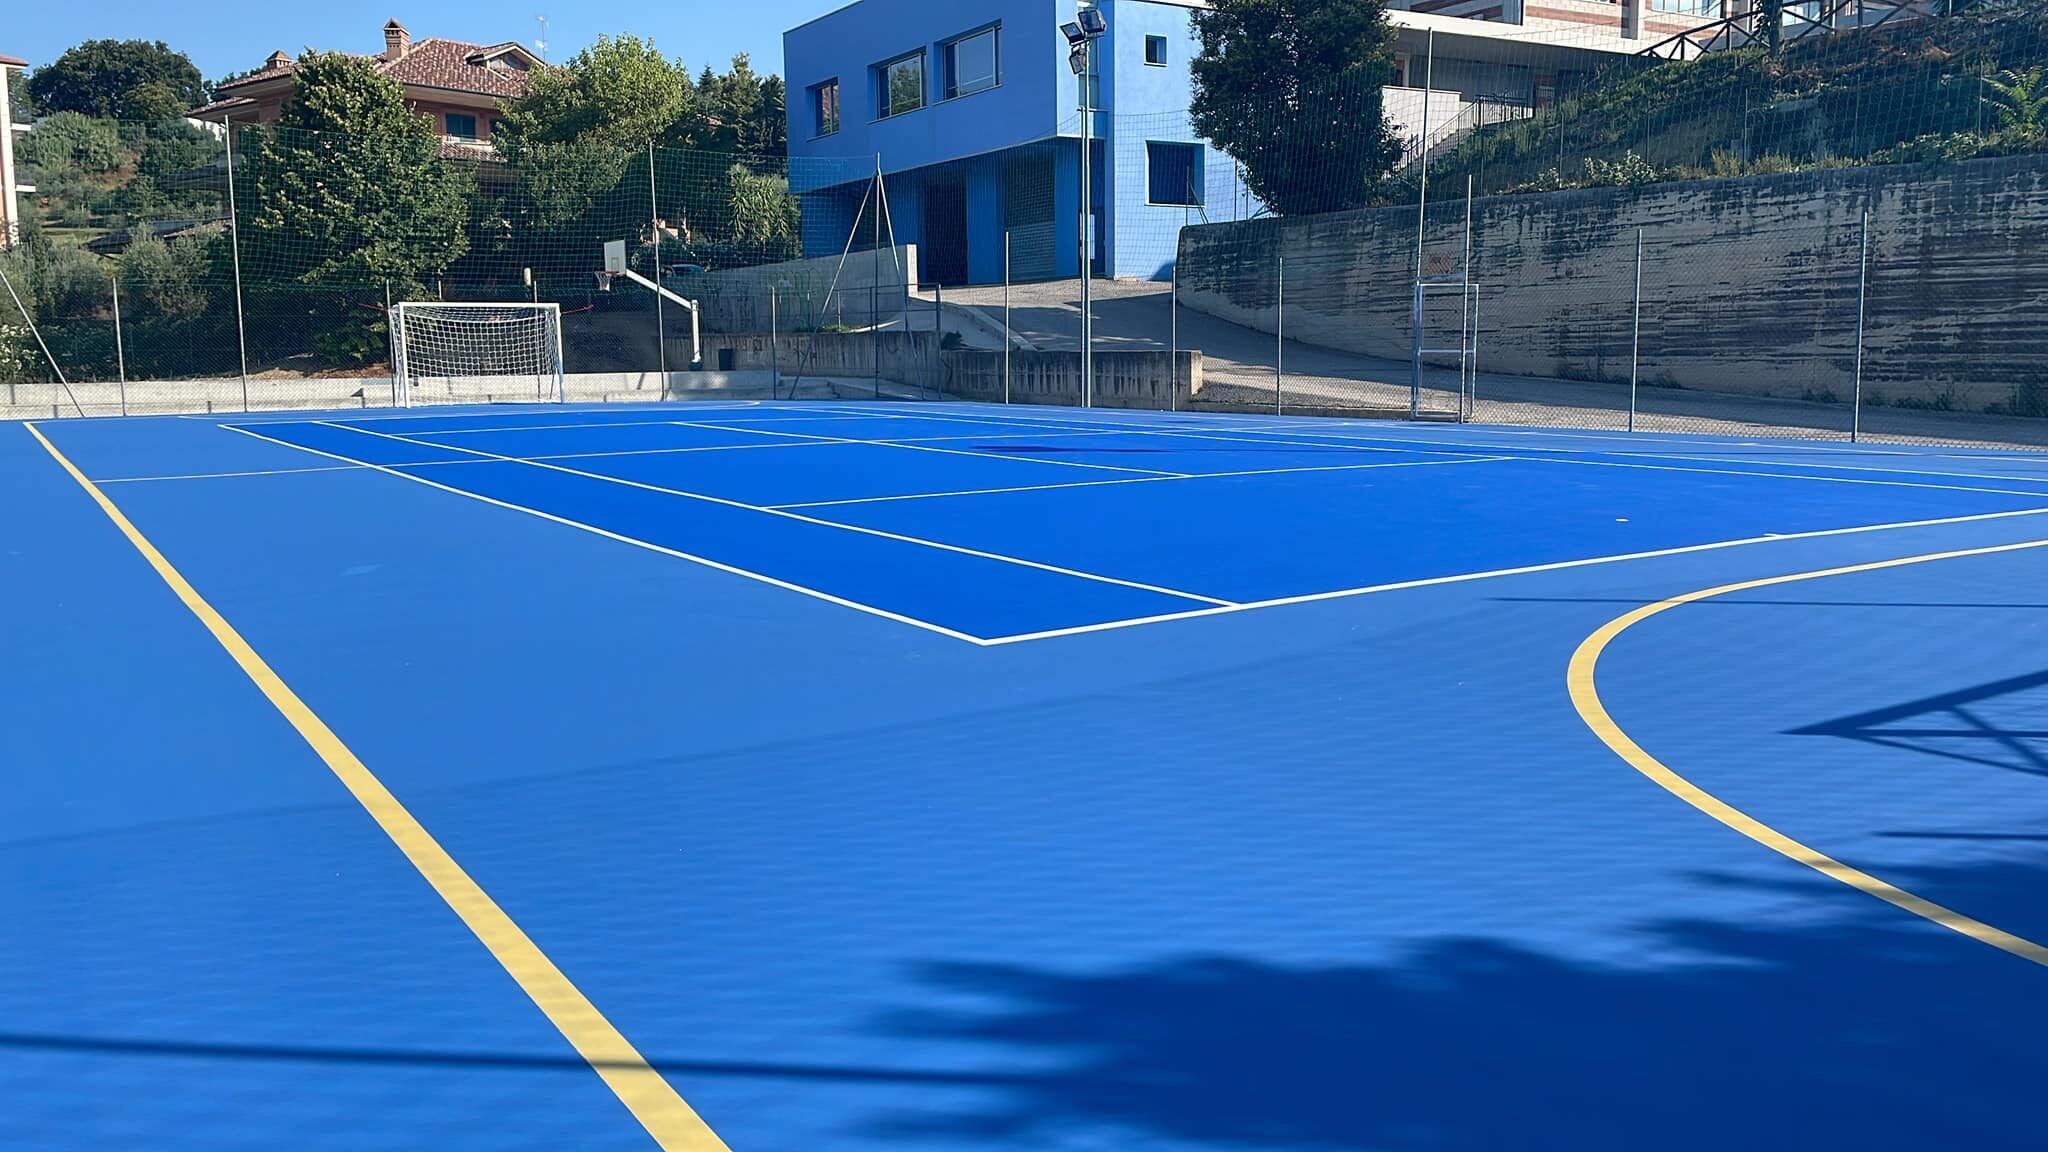 Tennis service a Roseto degli Abruzzi, dalla messa in posa ex novo alla smantellamento di un campo da gioco preesistente 